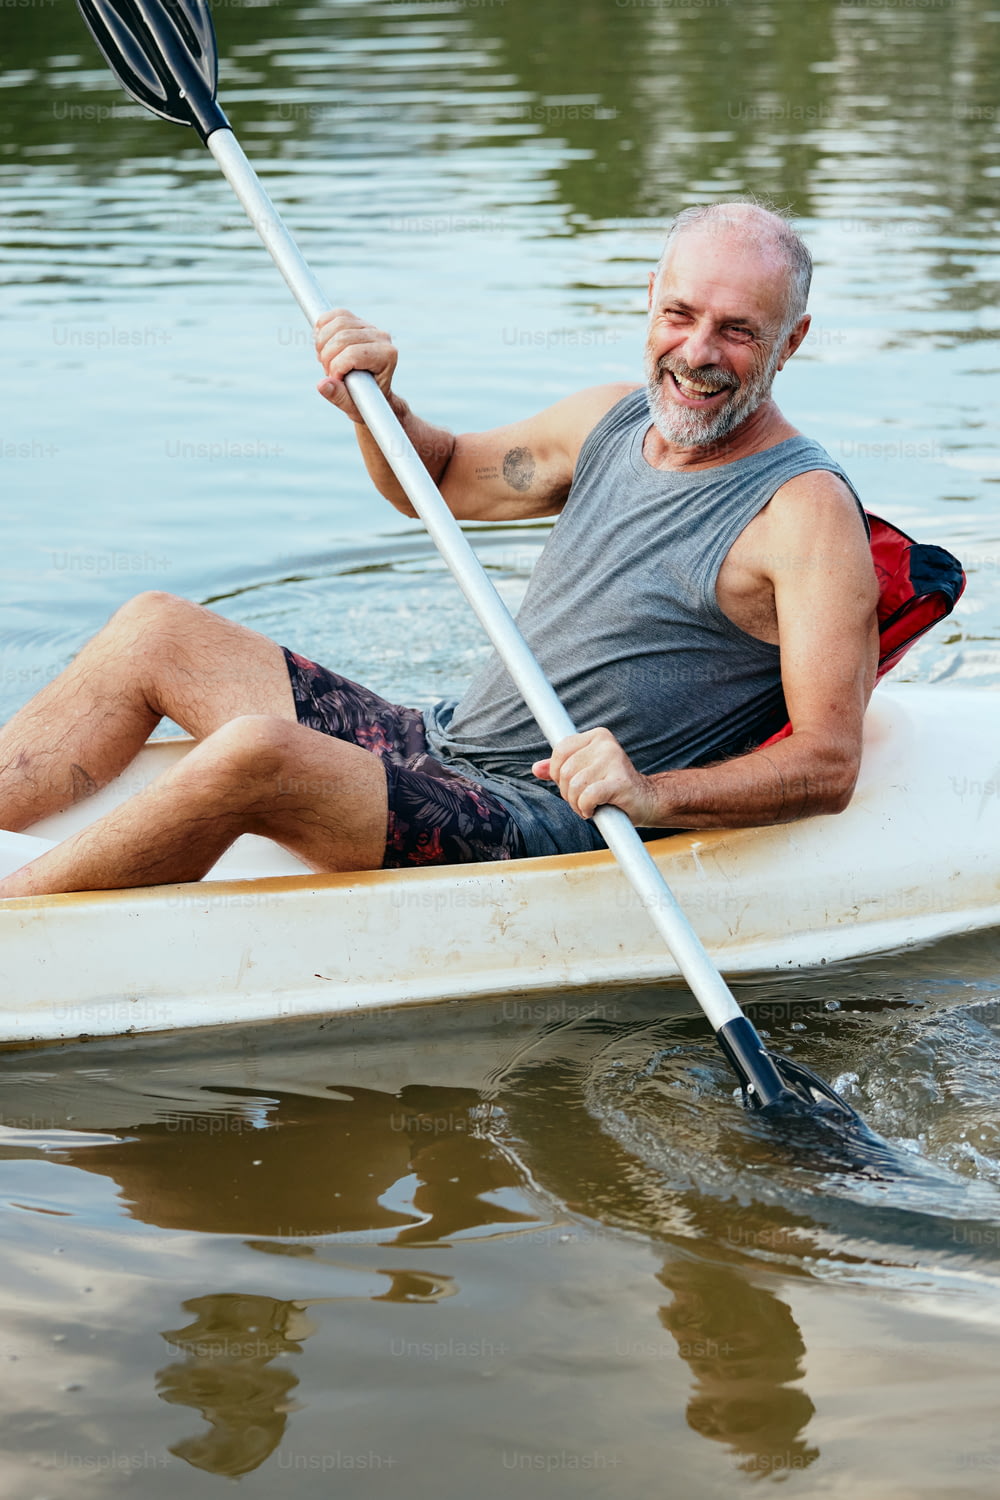 Un hombre está remando una canoa en el agua